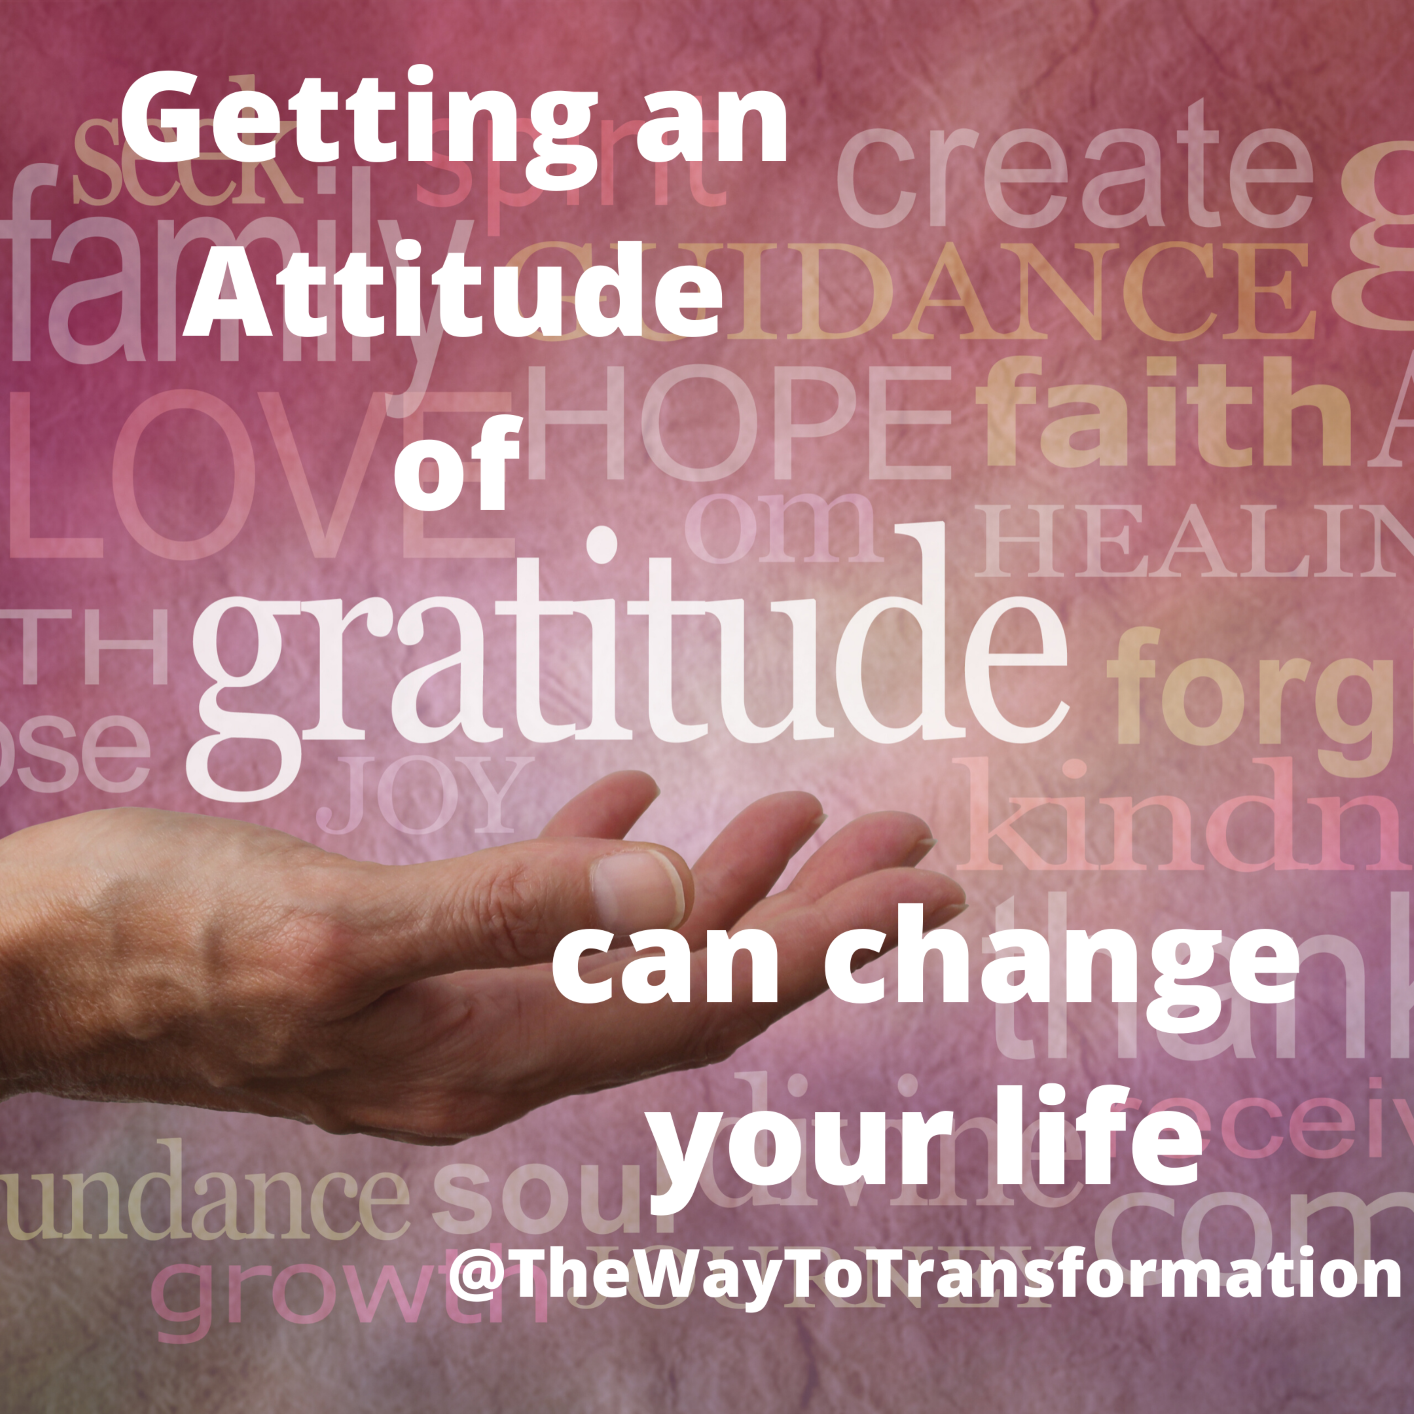 Get an Attitude of Gratitude